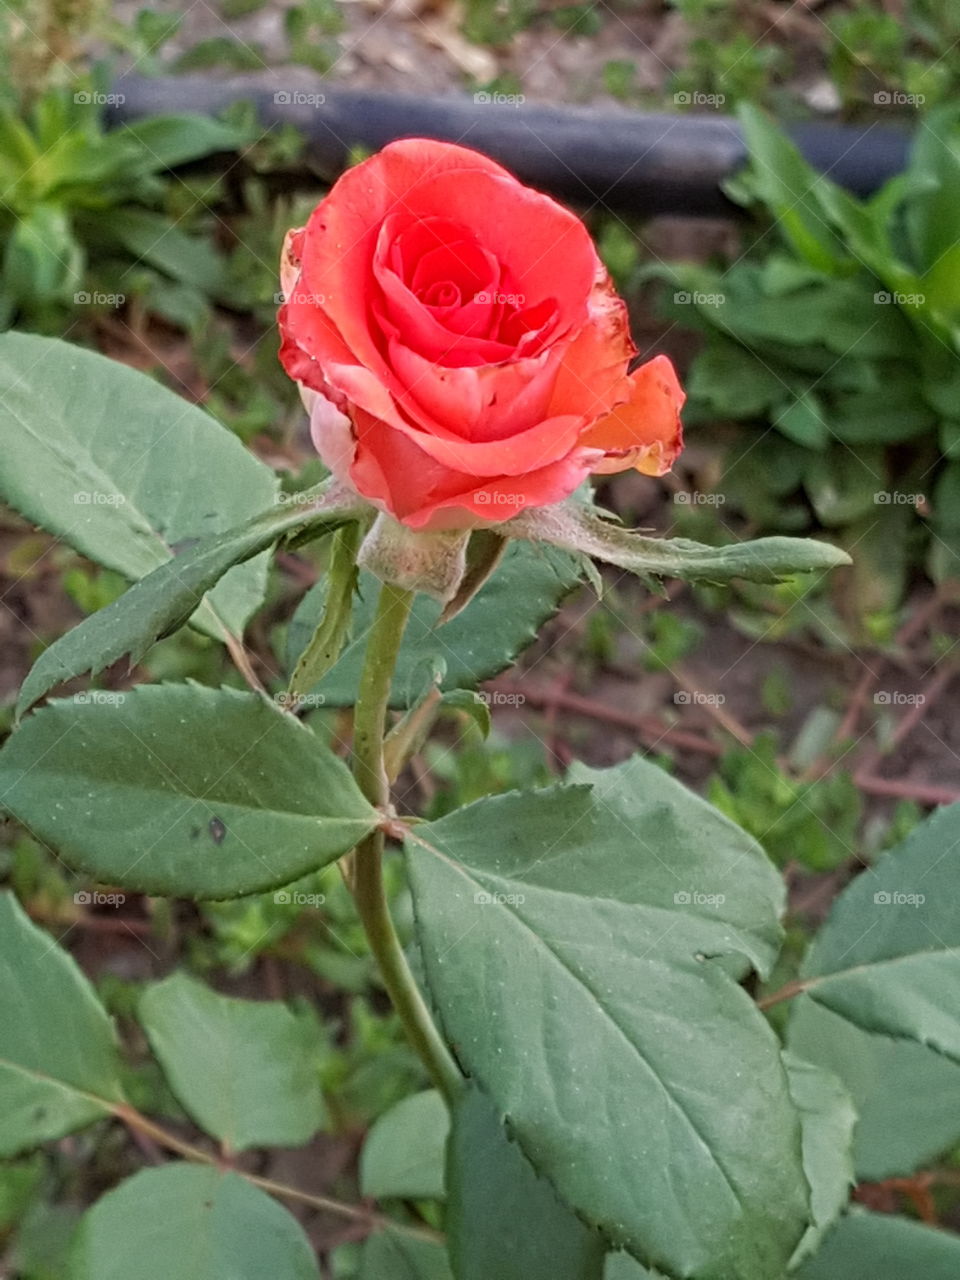 Real rose